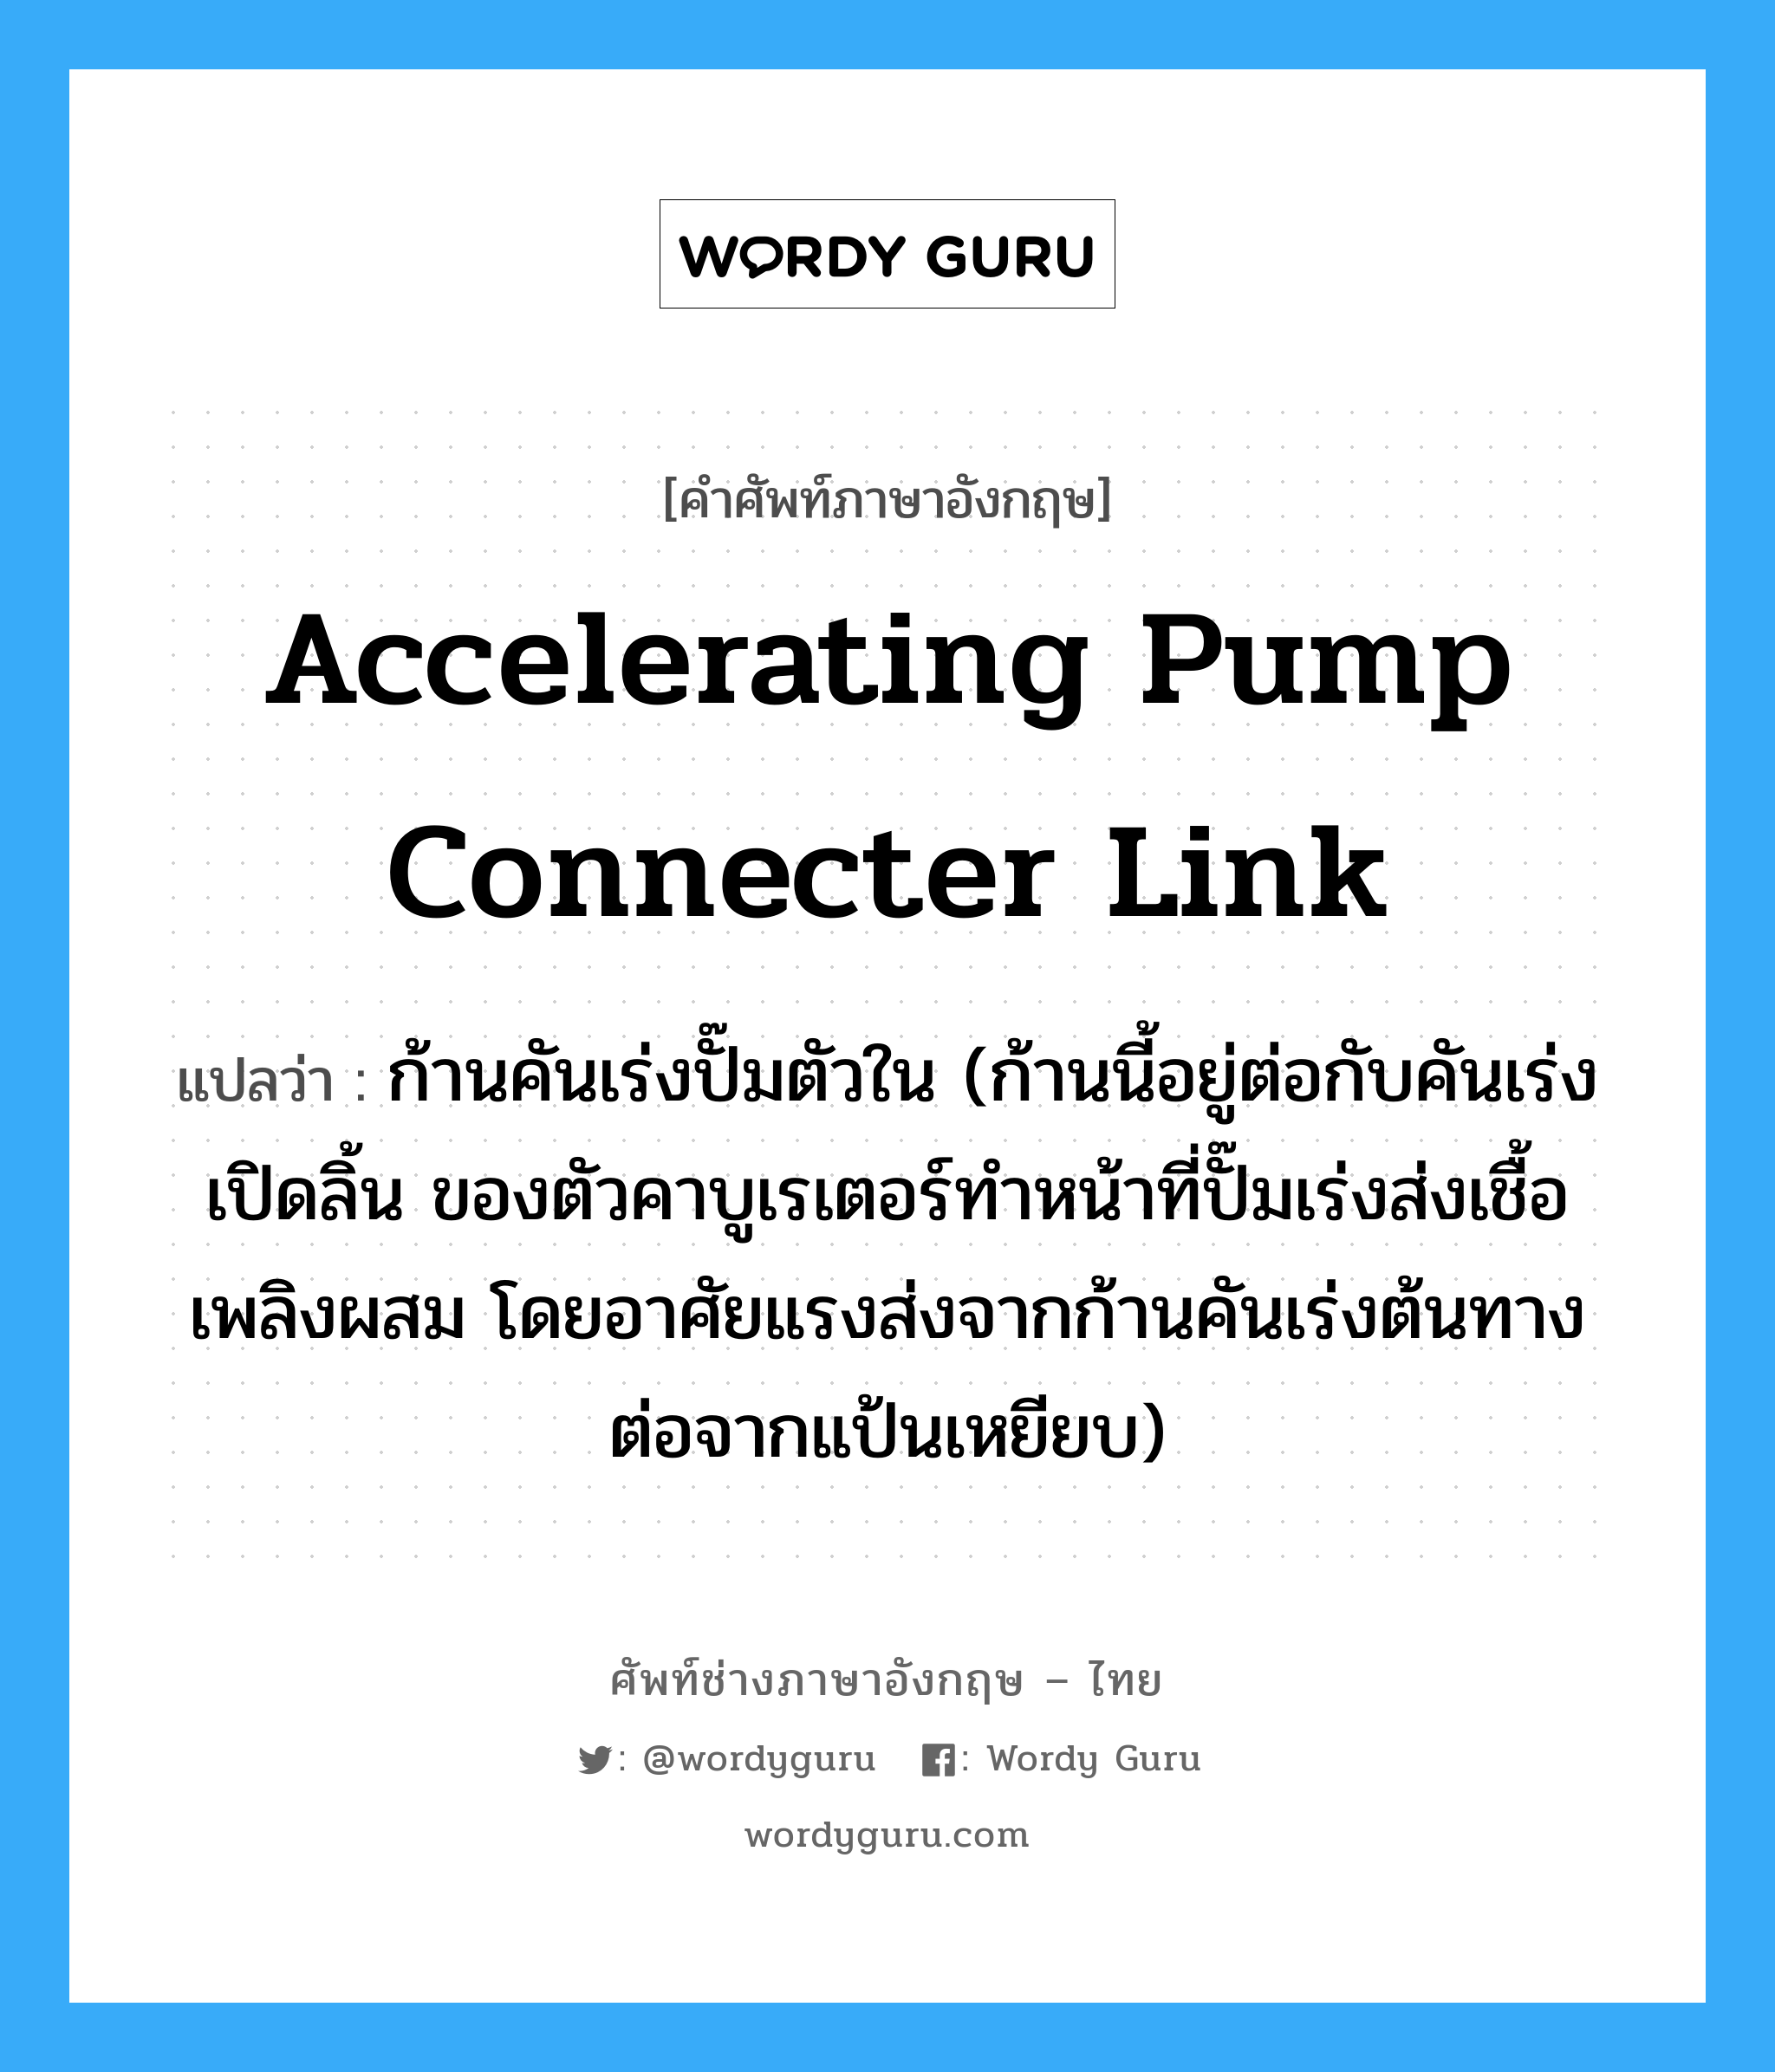 accelerating pump connecter link แปลว่า?, คำศัพท์ช่างภาษาอังกฤษ - ไทย accelerating pump connecter link คำศัพท์ภาษาอังกฤษ accelerating pump connecter link แปลว่า ก้านคันเร่งปั๊มตัวใน (ก้านนี้อยู่ต่อกับคันเร่งเปิดลิ้น ของตัวคาบูเรเตอร์ทำหน้าที่ปั๊มเร่งส่งเชื้อเพลิงผสม โดยอาศัยแรงส่งจากก้านคันเร่งต้นทางต่อจากแป้นเหยียบ)